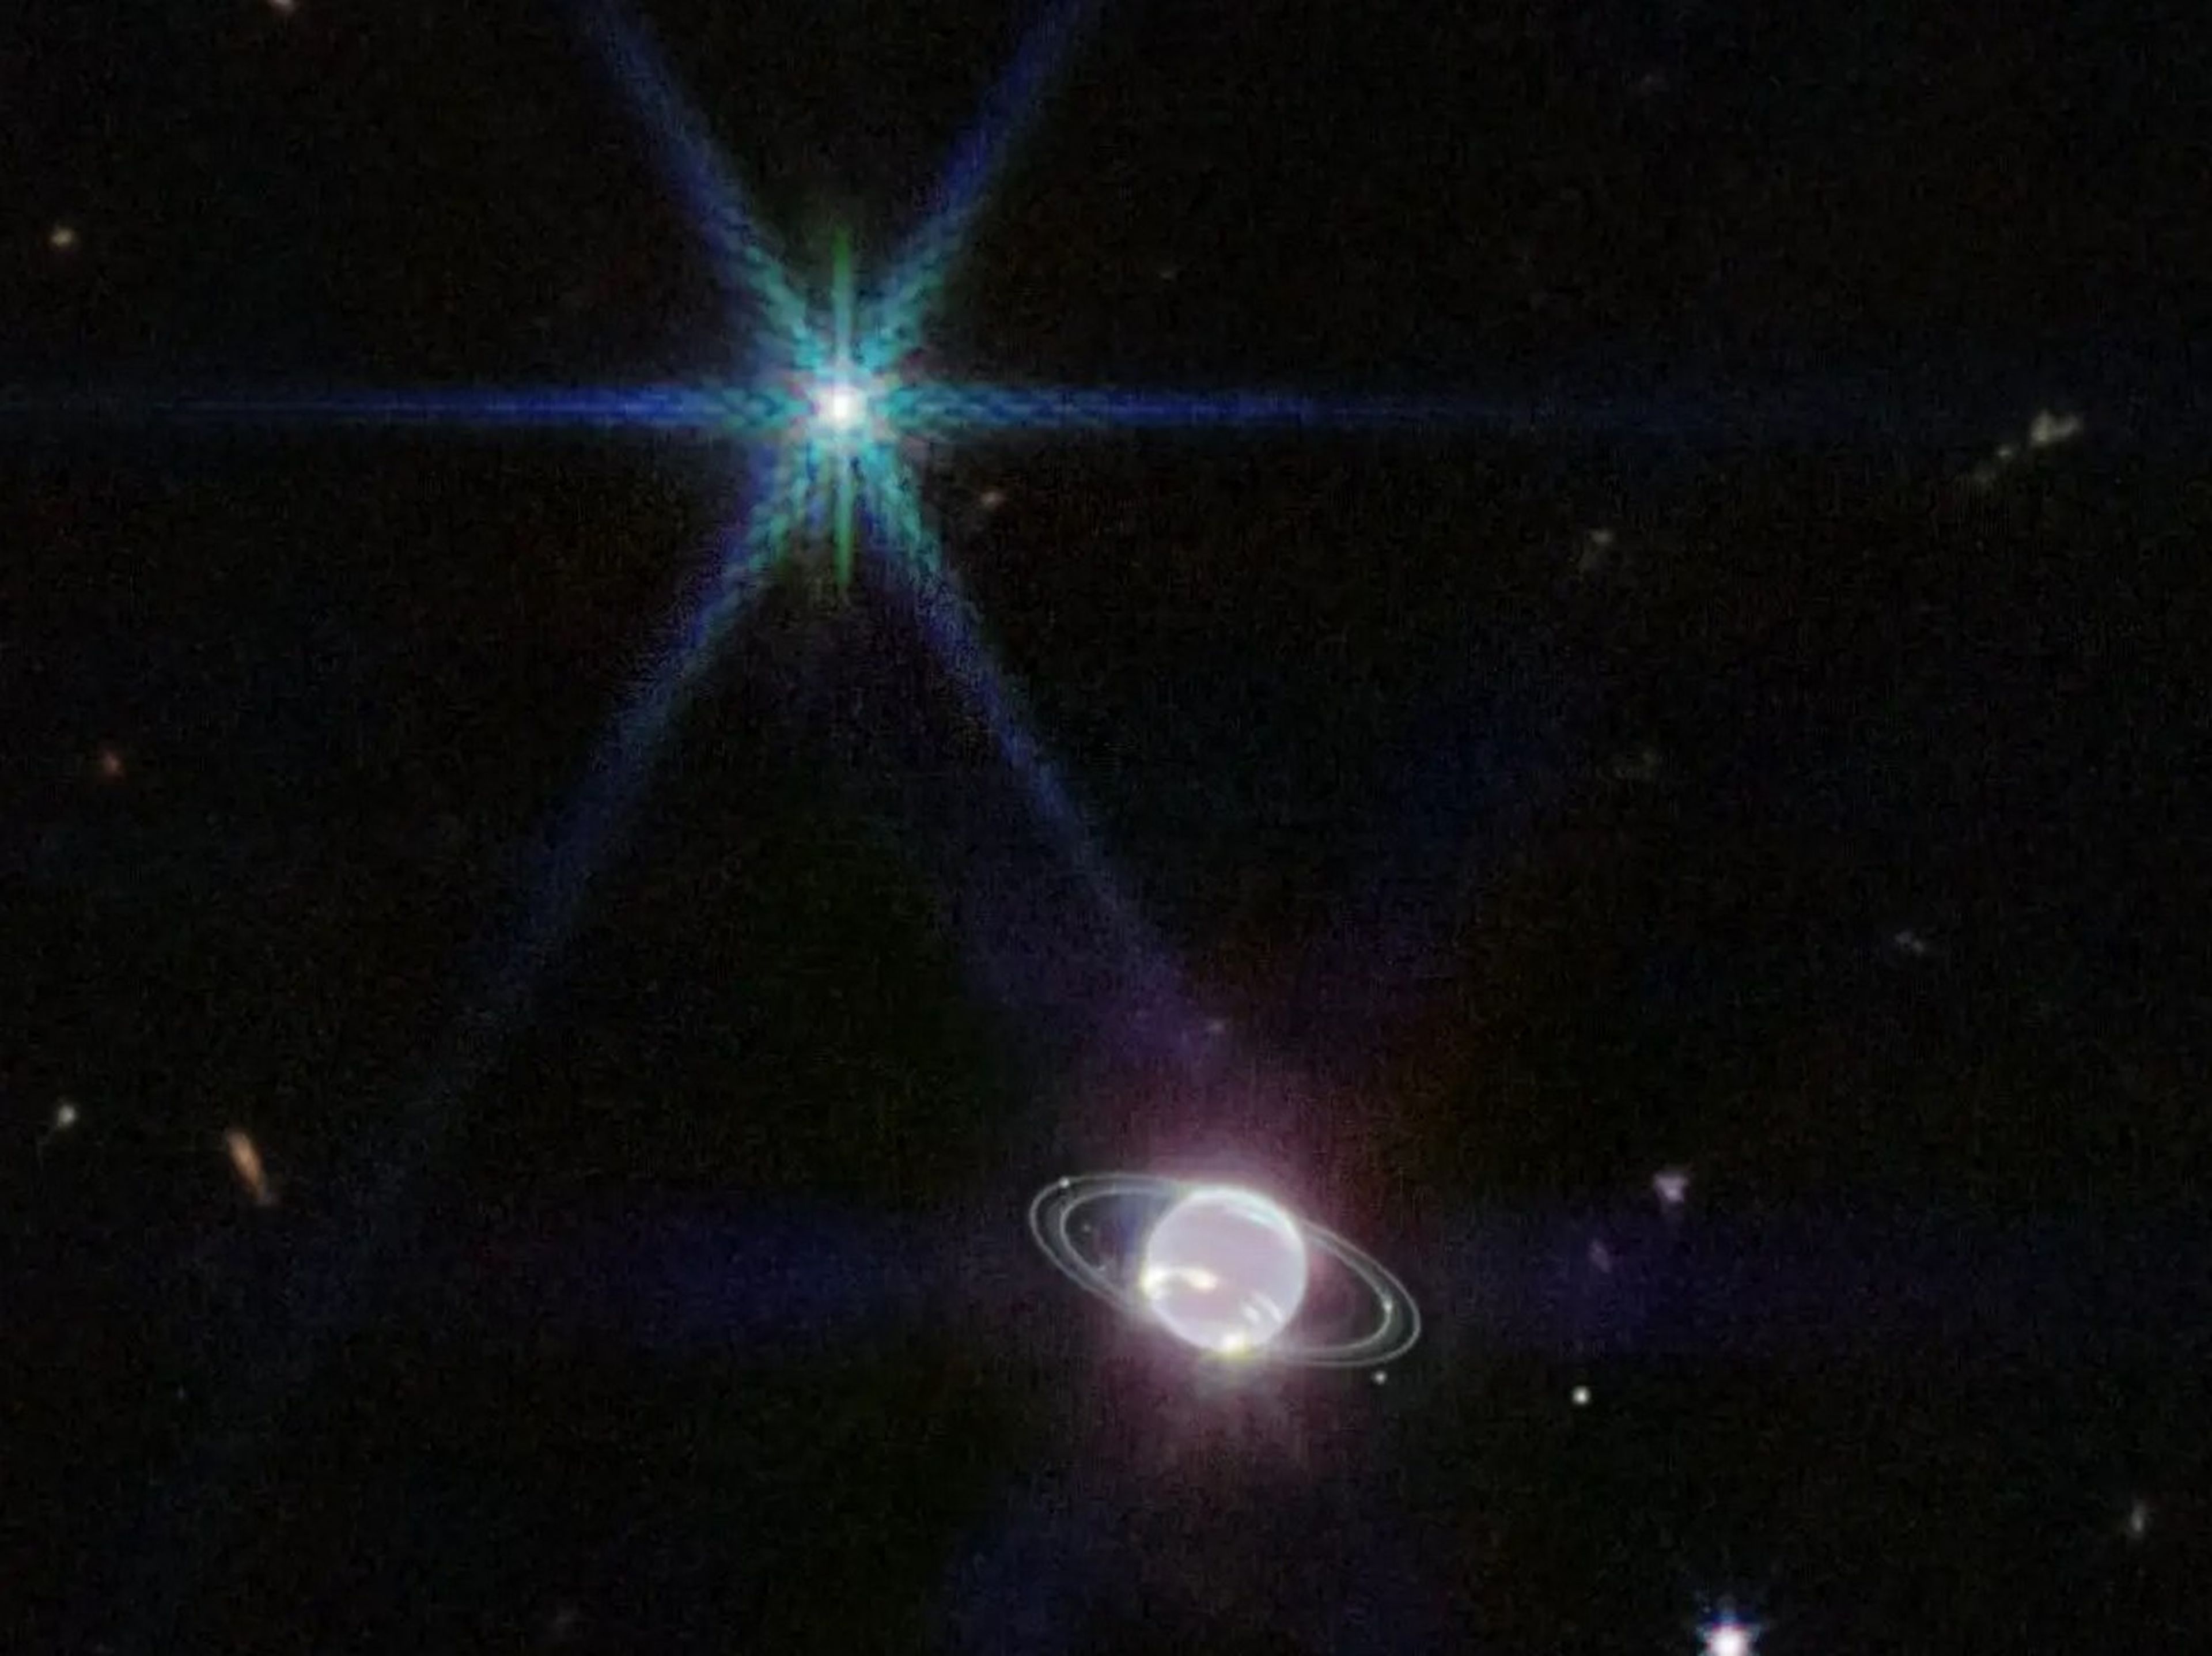 Imagen de Neptuno tomada por el telescopio espacial James